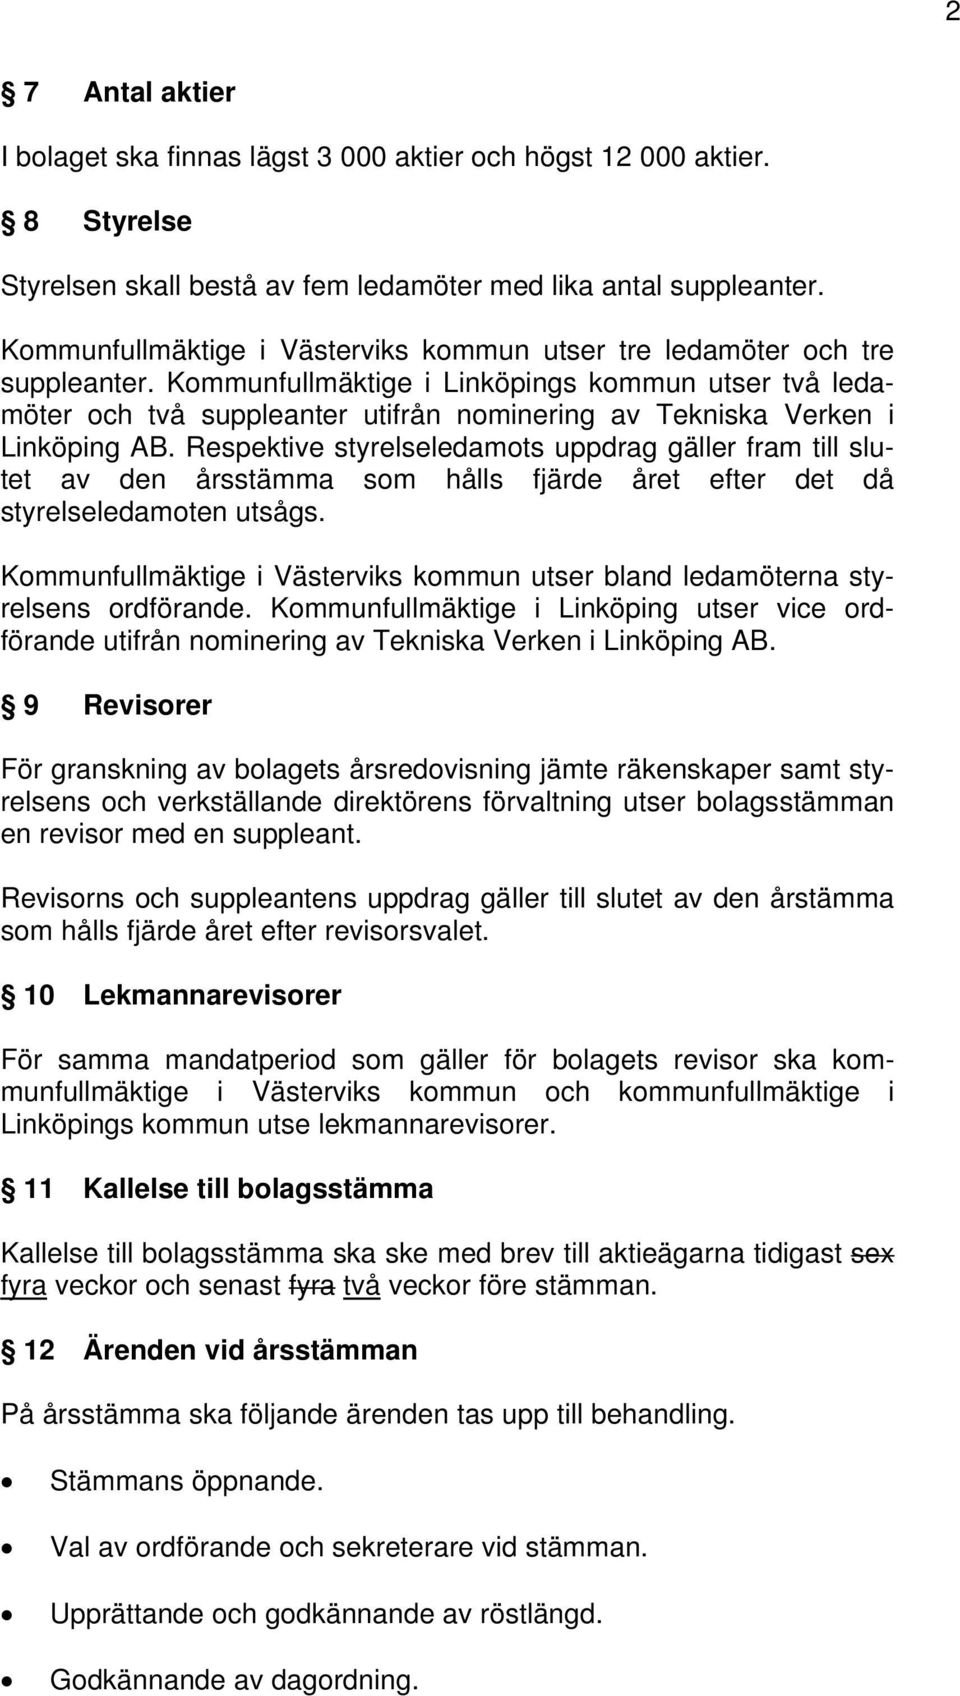 Kommunfullmäktige i Linköpings kommun utser två ledamöter och två suppleanter utifrån nominering av Tekniska Verken i Linköping AB.